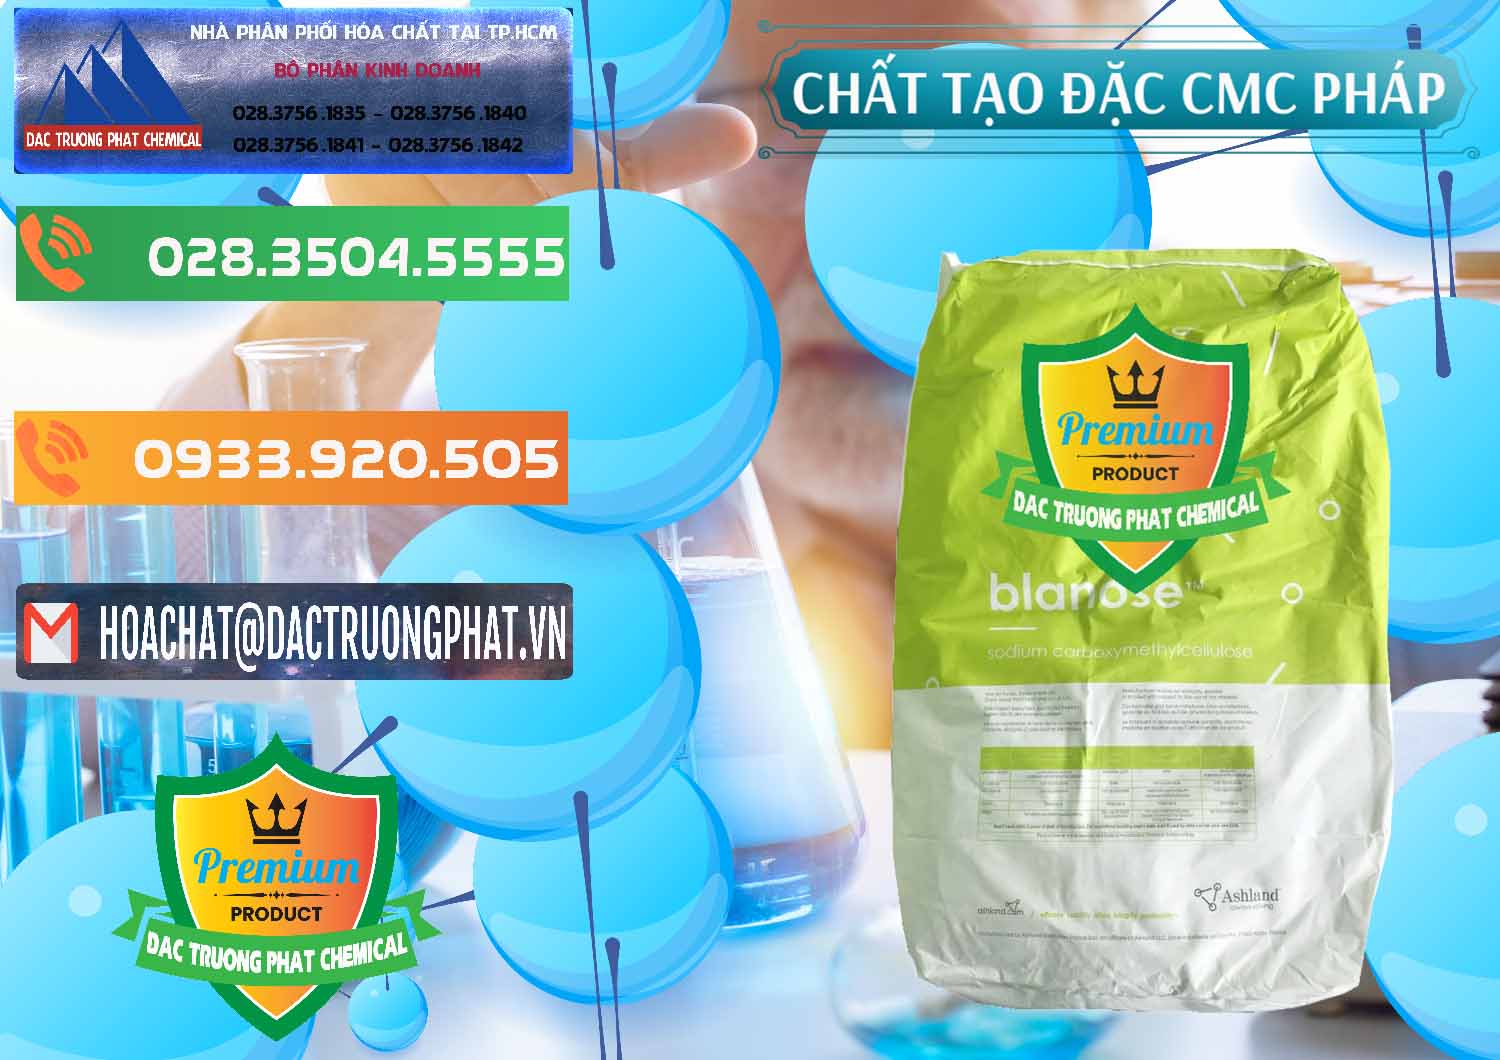 Cty kinh doanh & bán Chất Tạo Đặc CMC - Carboxyl Methyl Cellulose Pháp France - 0394 - Nhập khẩu & cung cấp hóa chất tại TP.HCM - hoachatxulynuoc.com.vn